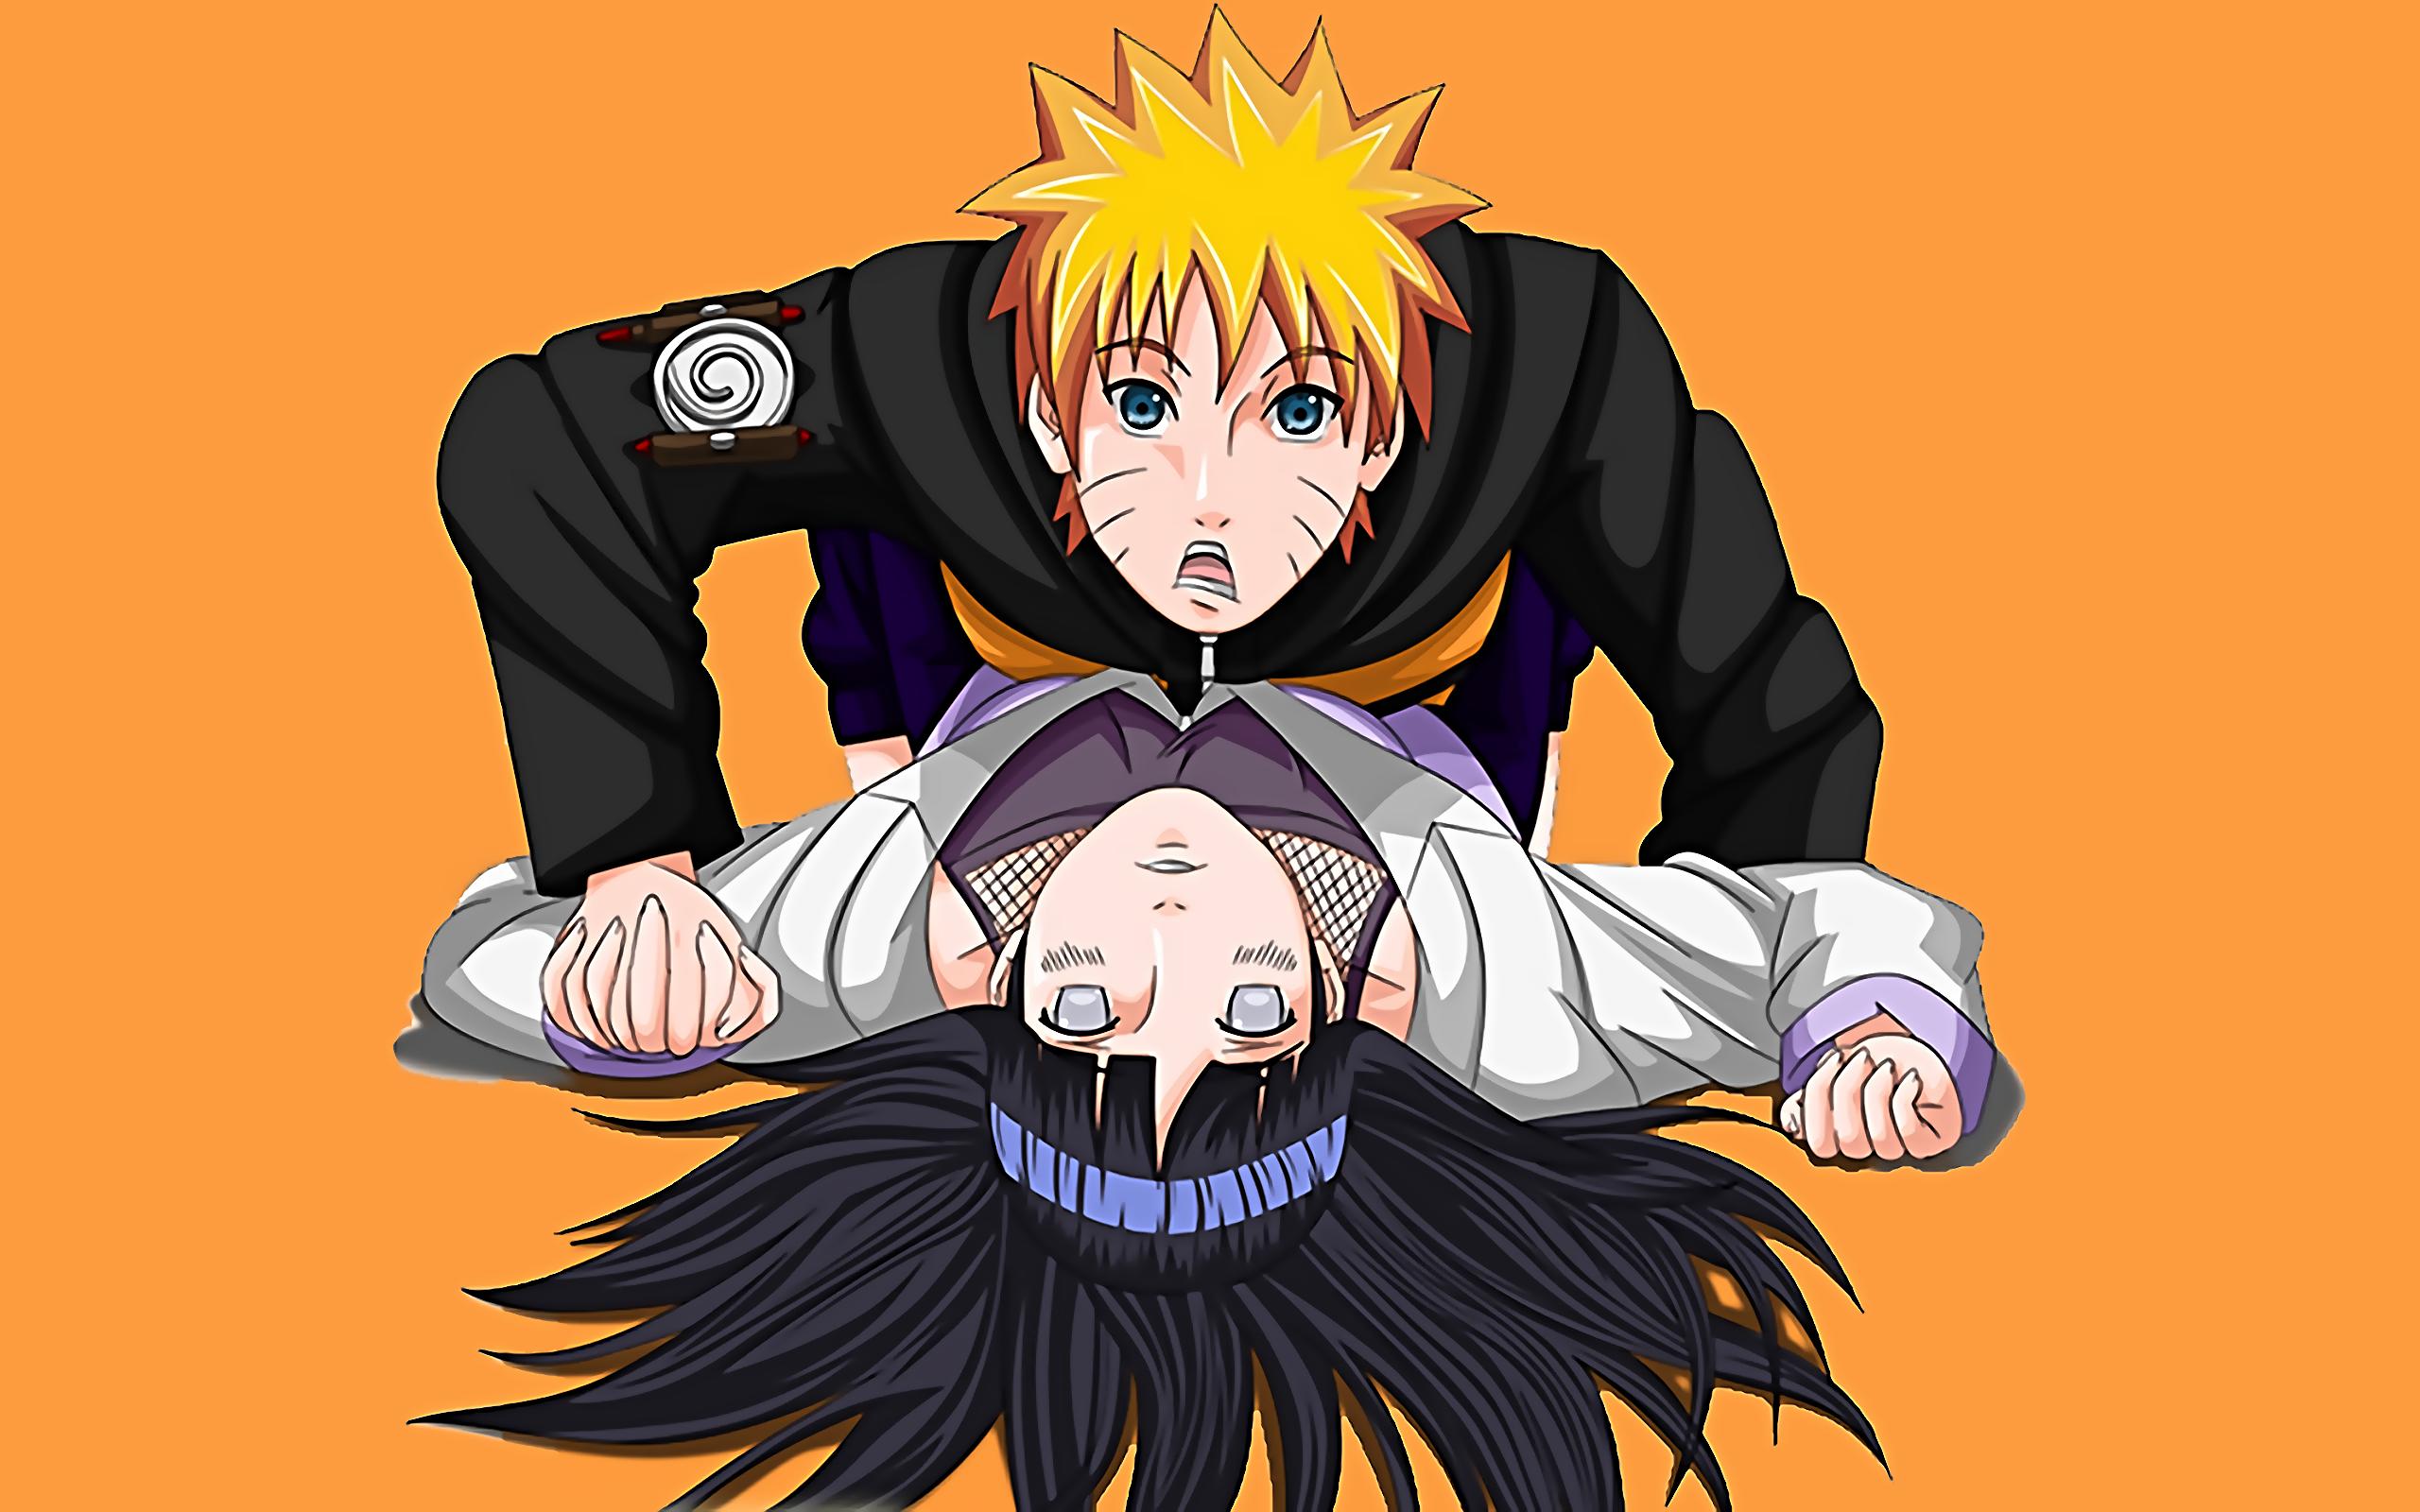 Vốn được yêu thích với những câu chuyện tình cảm ngọt ngào, mối tình giữa Naruto và Hinata được fan mong chờ và yêu mến. Hãy nhanh chân chiêm ngưỡng bức ảnh về cặp đôi này và tìm hiểu thêm về những khoảnh khắc lãng mạn trong loạt anime Naruto.